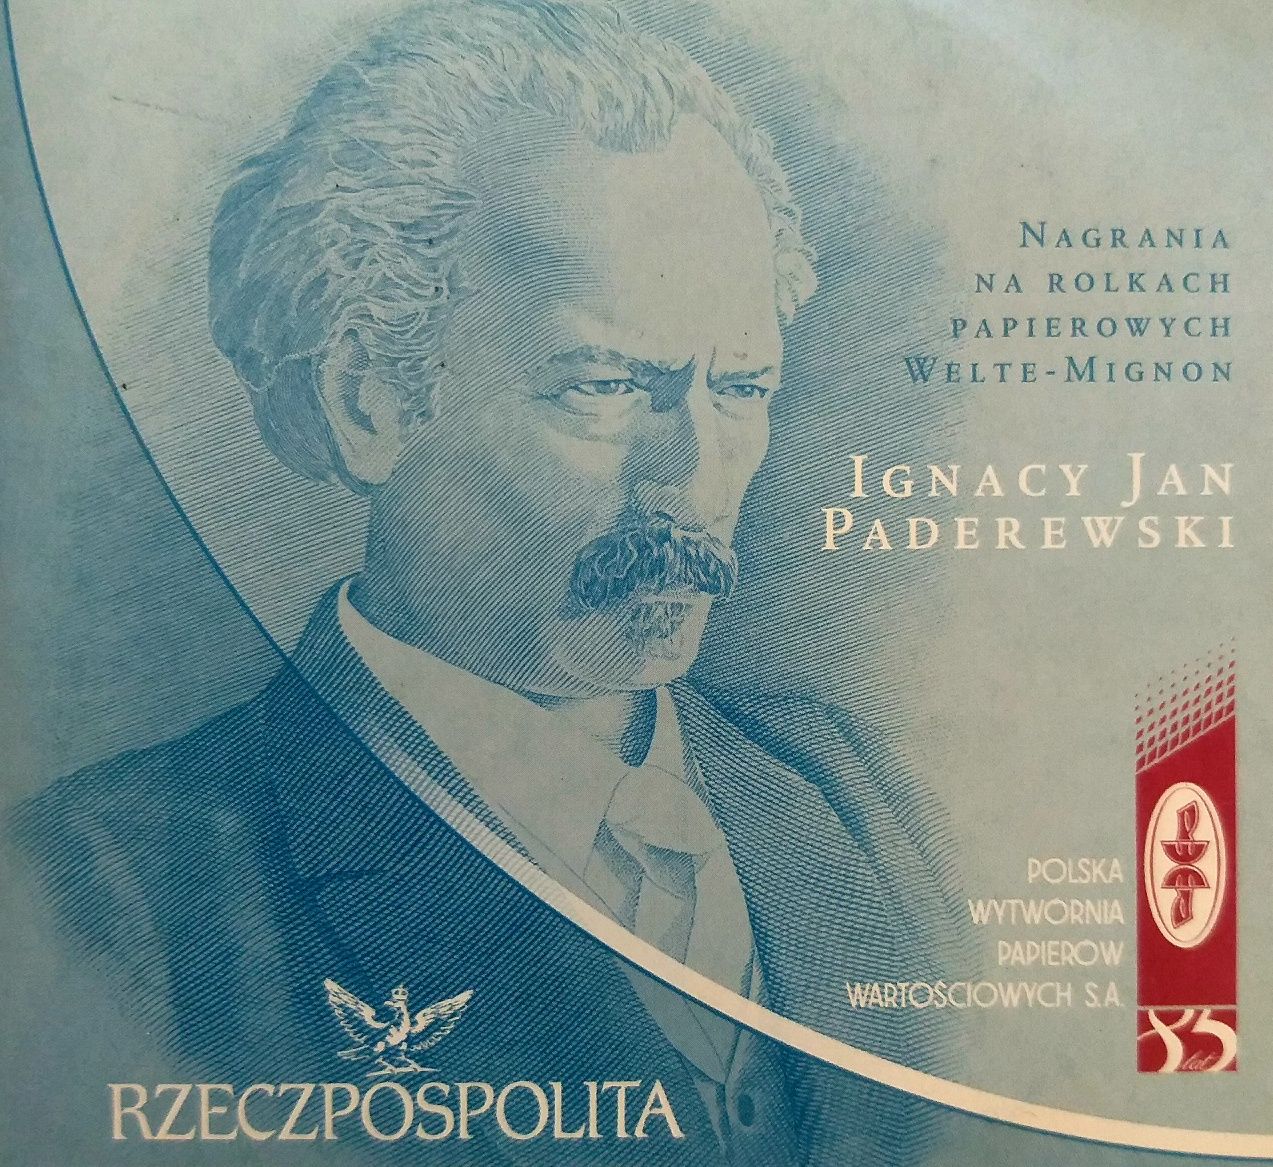 Ignacy Jan Paderewski Nagrania Na Rolkach Papierowych Welton-Mignion